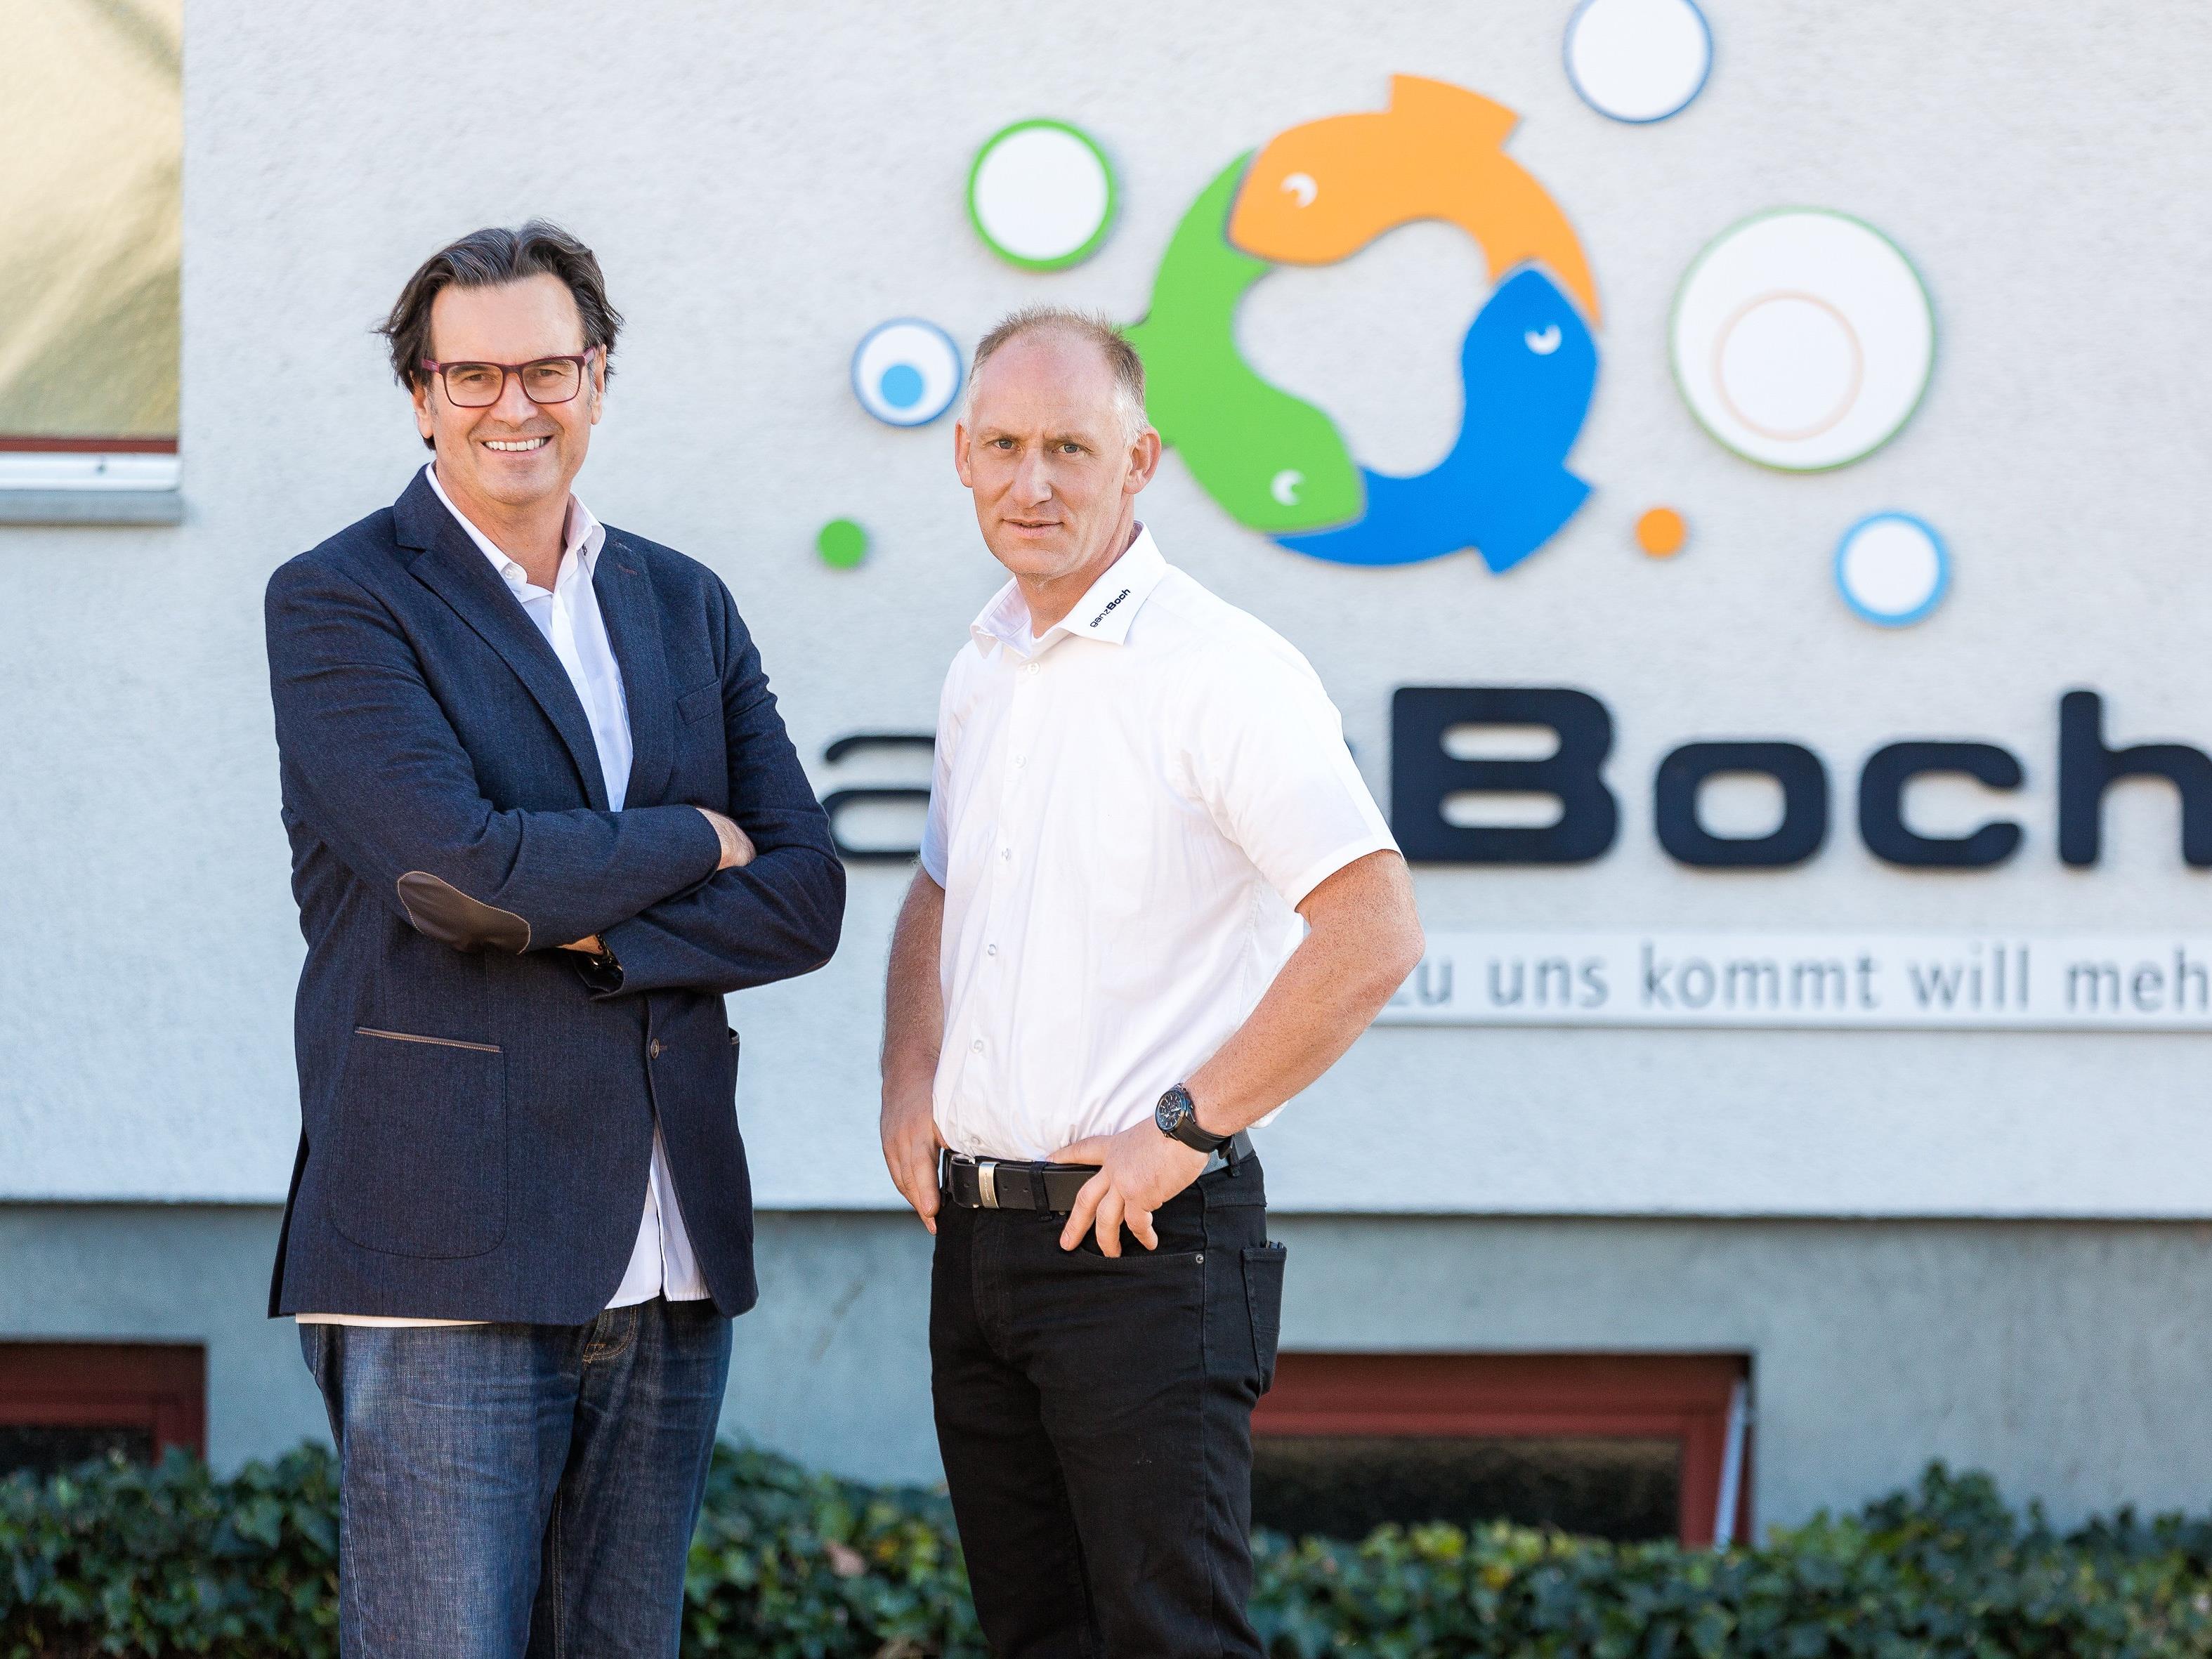 Ab sofort erhält Wolfgang Boch Verstärkung durch seinen langjährigen Kollegen und Mitarbeiter, Andreas Bentele, der ihn ab sofort in der Geschäftsführung unterstützen wird